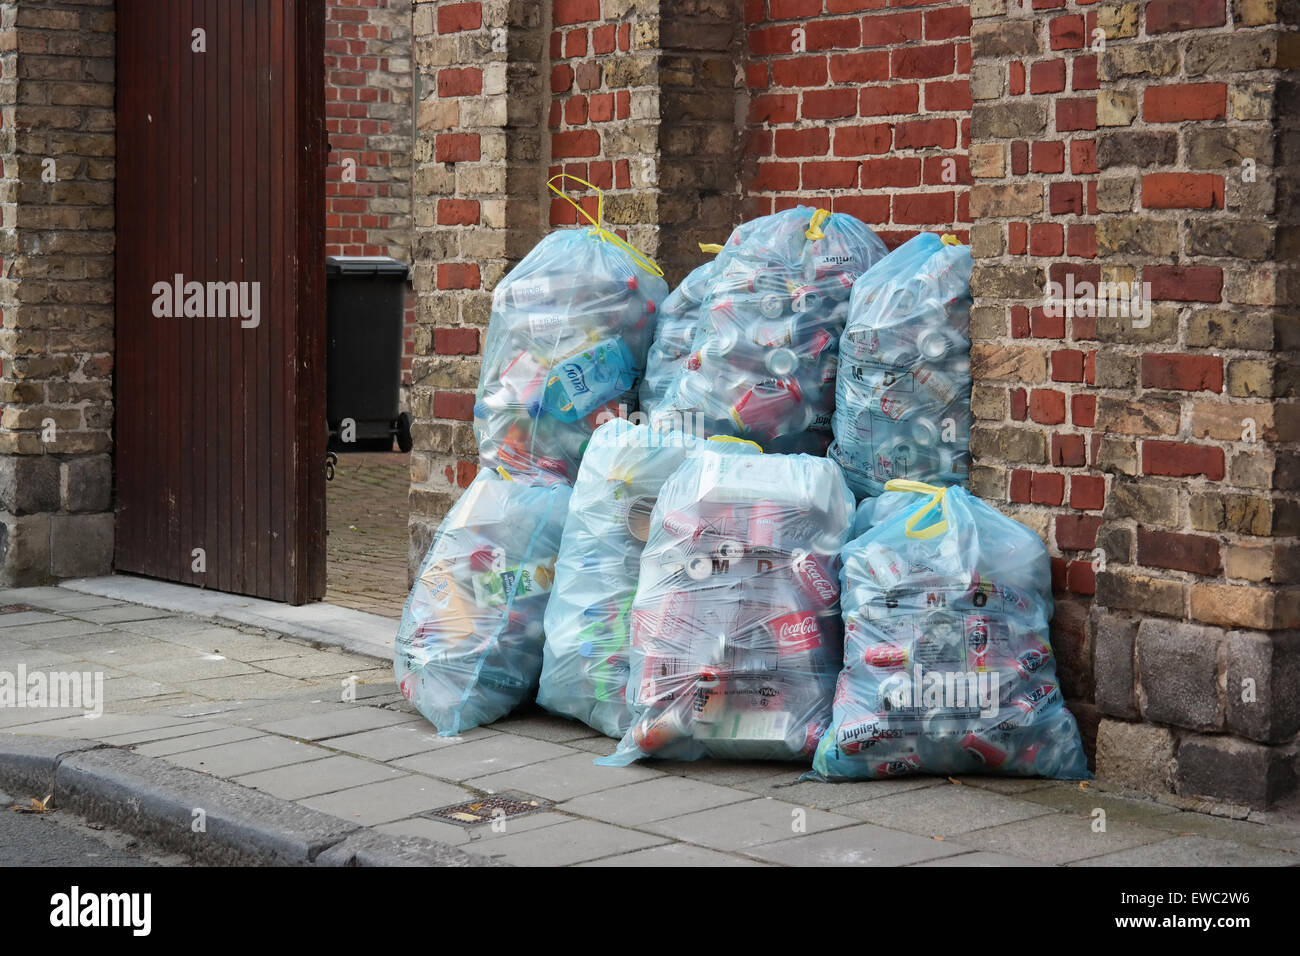 Montón de bolsas de basura para separar completa colección de latas de metal y botella de plástico basura en Bélgica Foto de stock